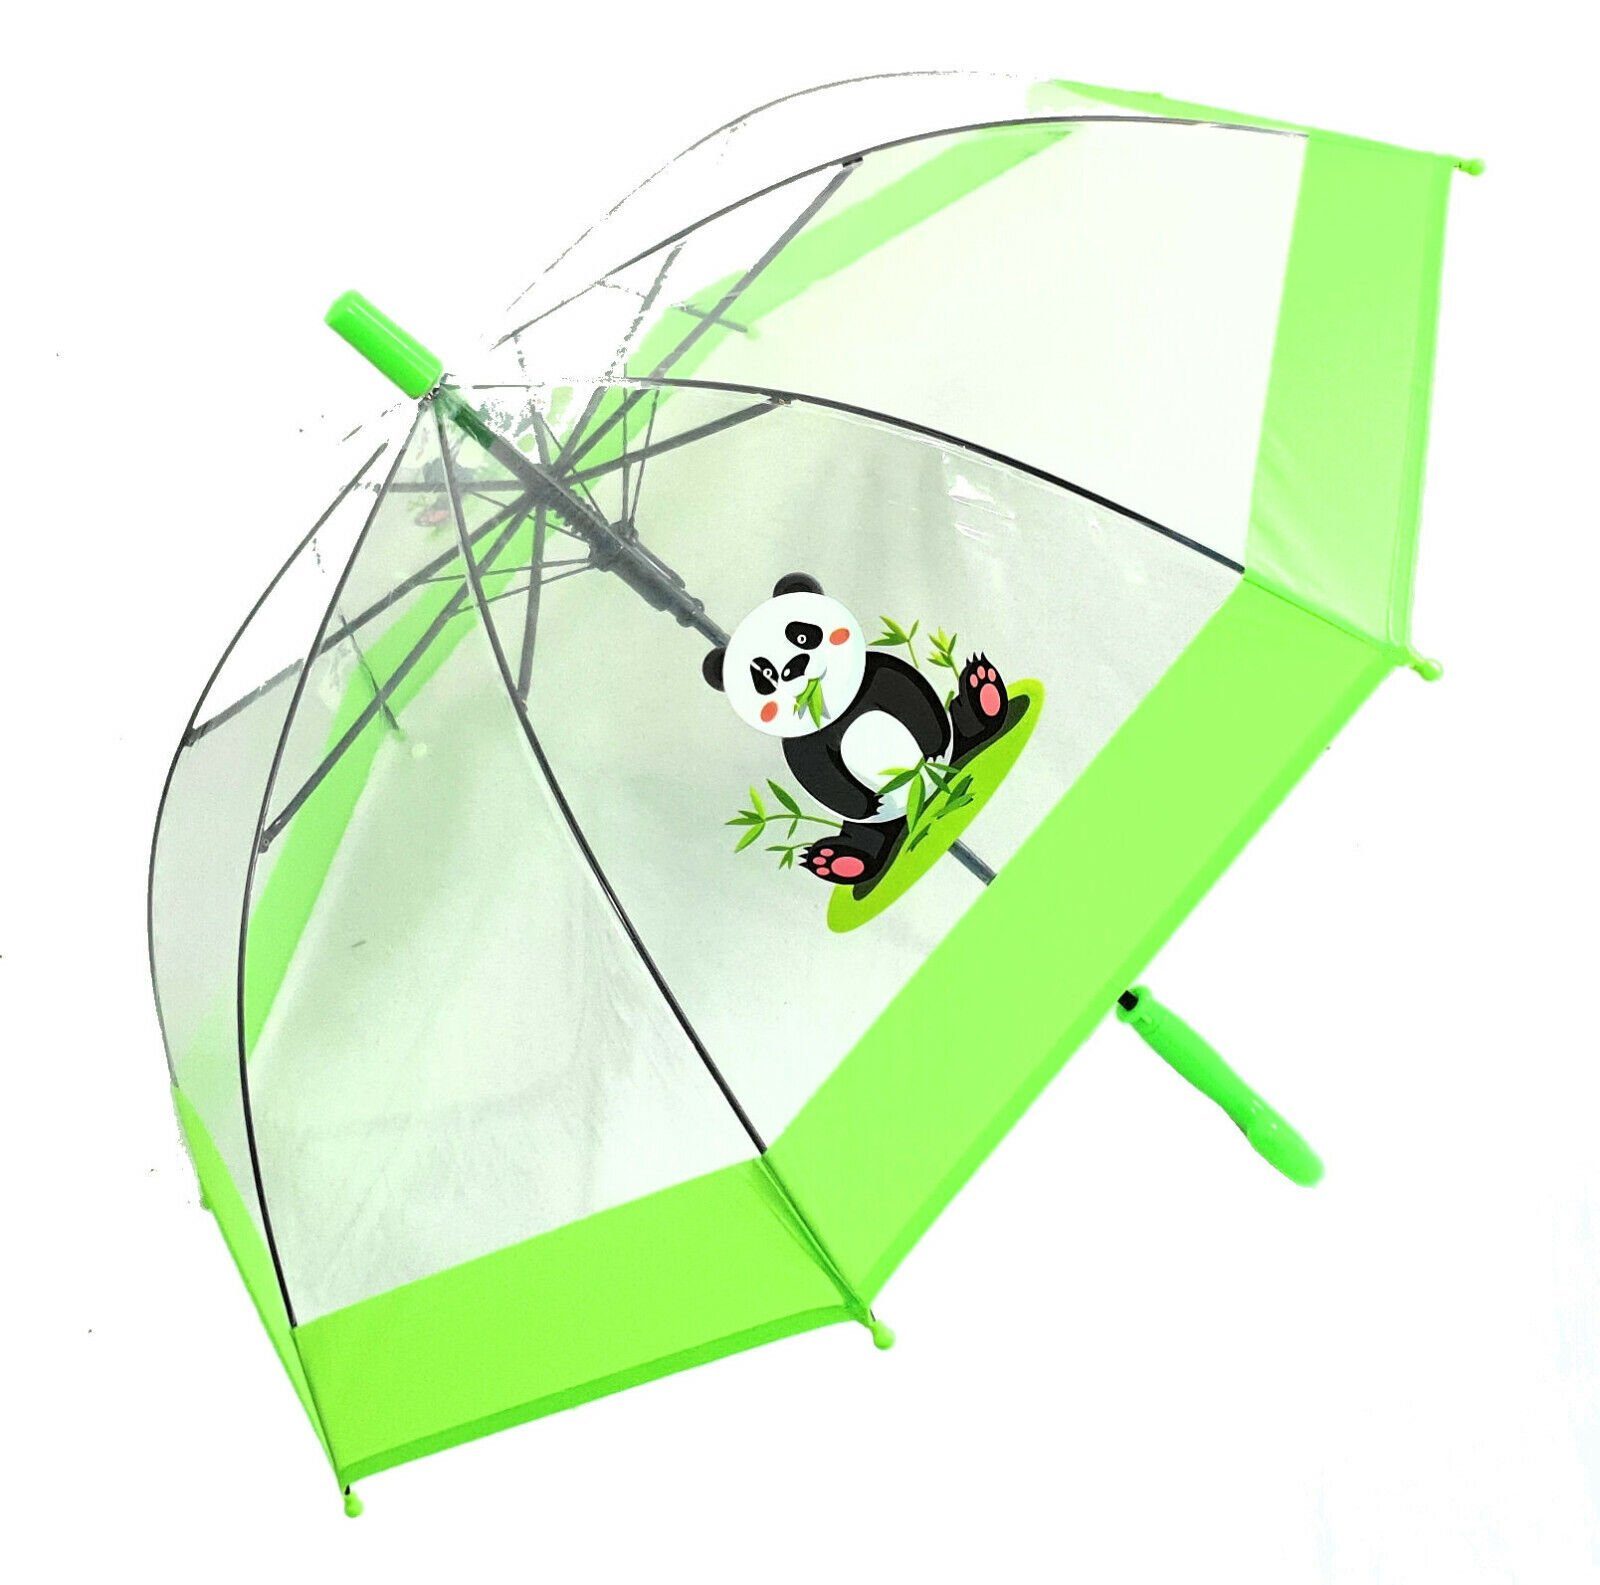 Dr. Neuser Stockregenschirm Regenschirm transparent durchsichtig Kinder grün süßer Automatik, tranparent mit Panda